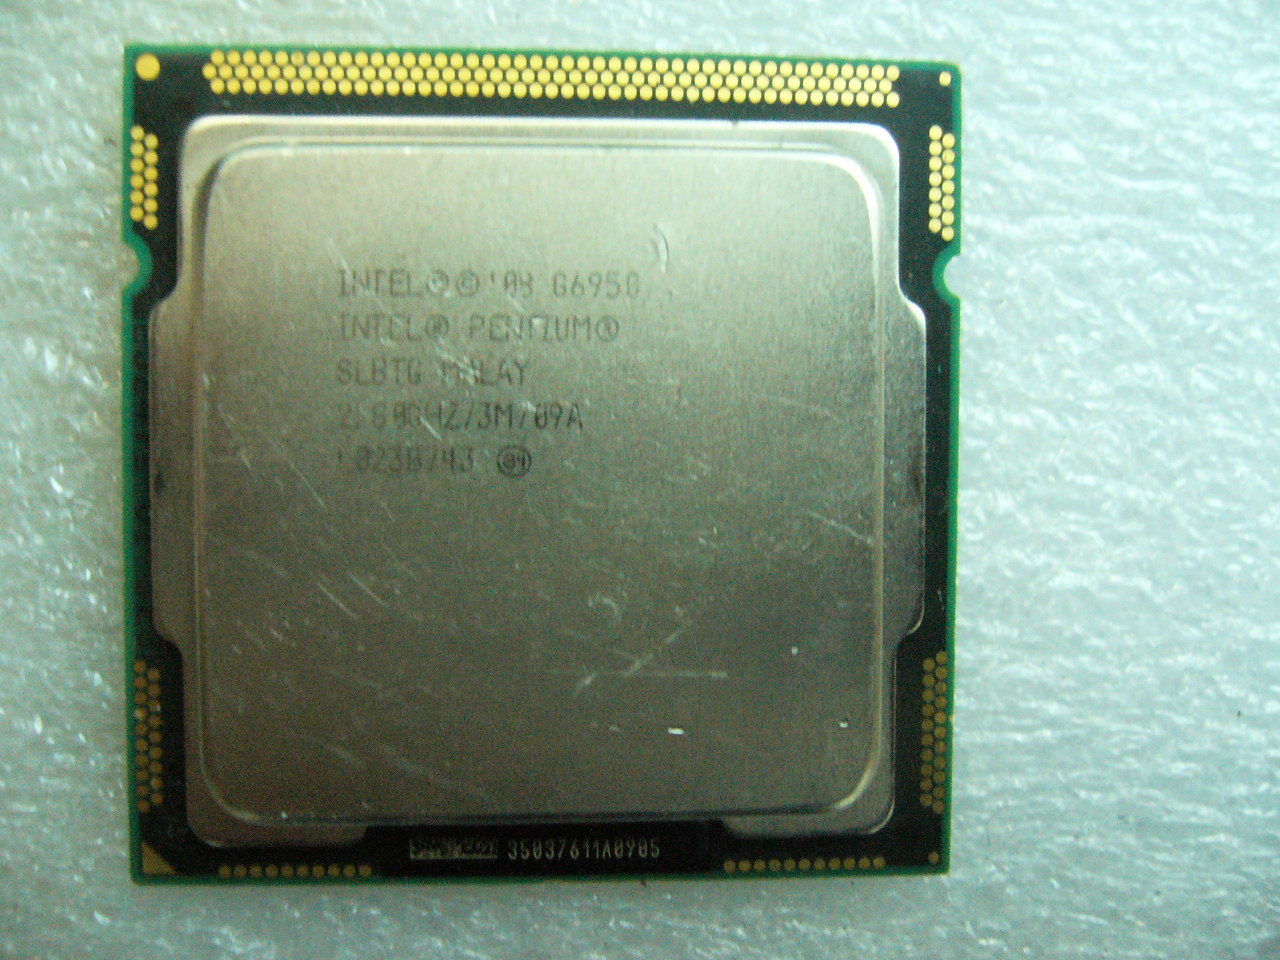 QTY 1x INTEL Pentium CPU G6950 2.8GHZ/3MB LGA1156 SLBTG SLBMS